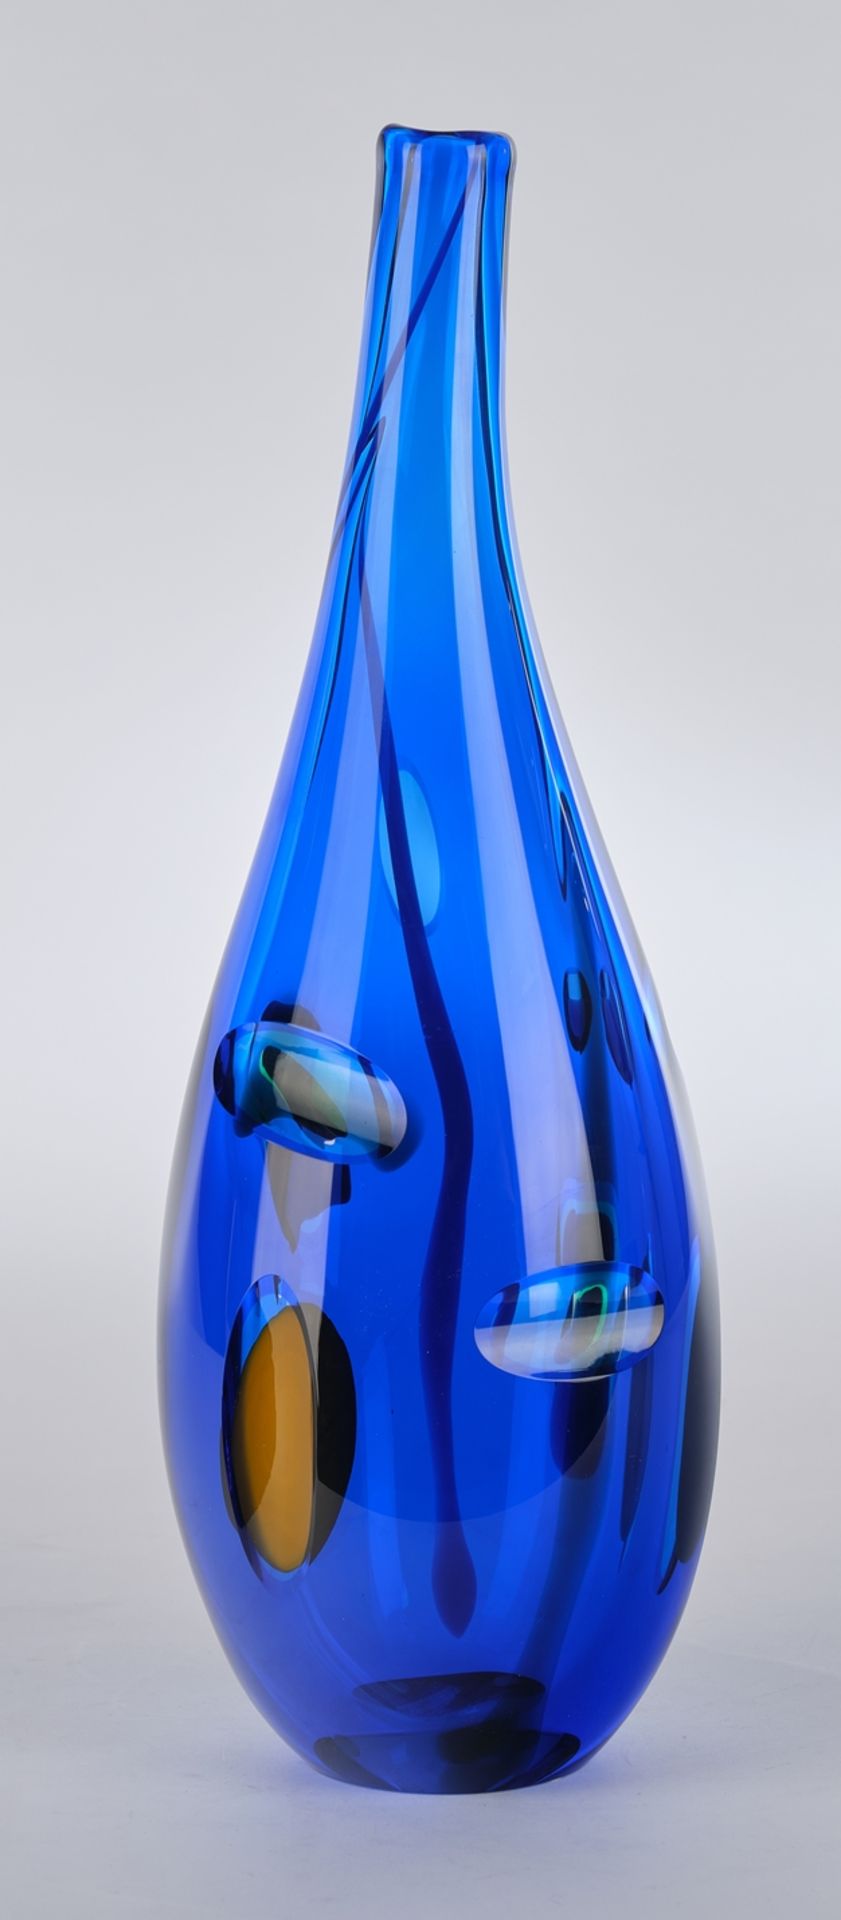 Sahlin, Gunnel, Kosta Boda, "Oriente III", Flaschenvase, Studioglas, limitierte Auflage, blau, eing